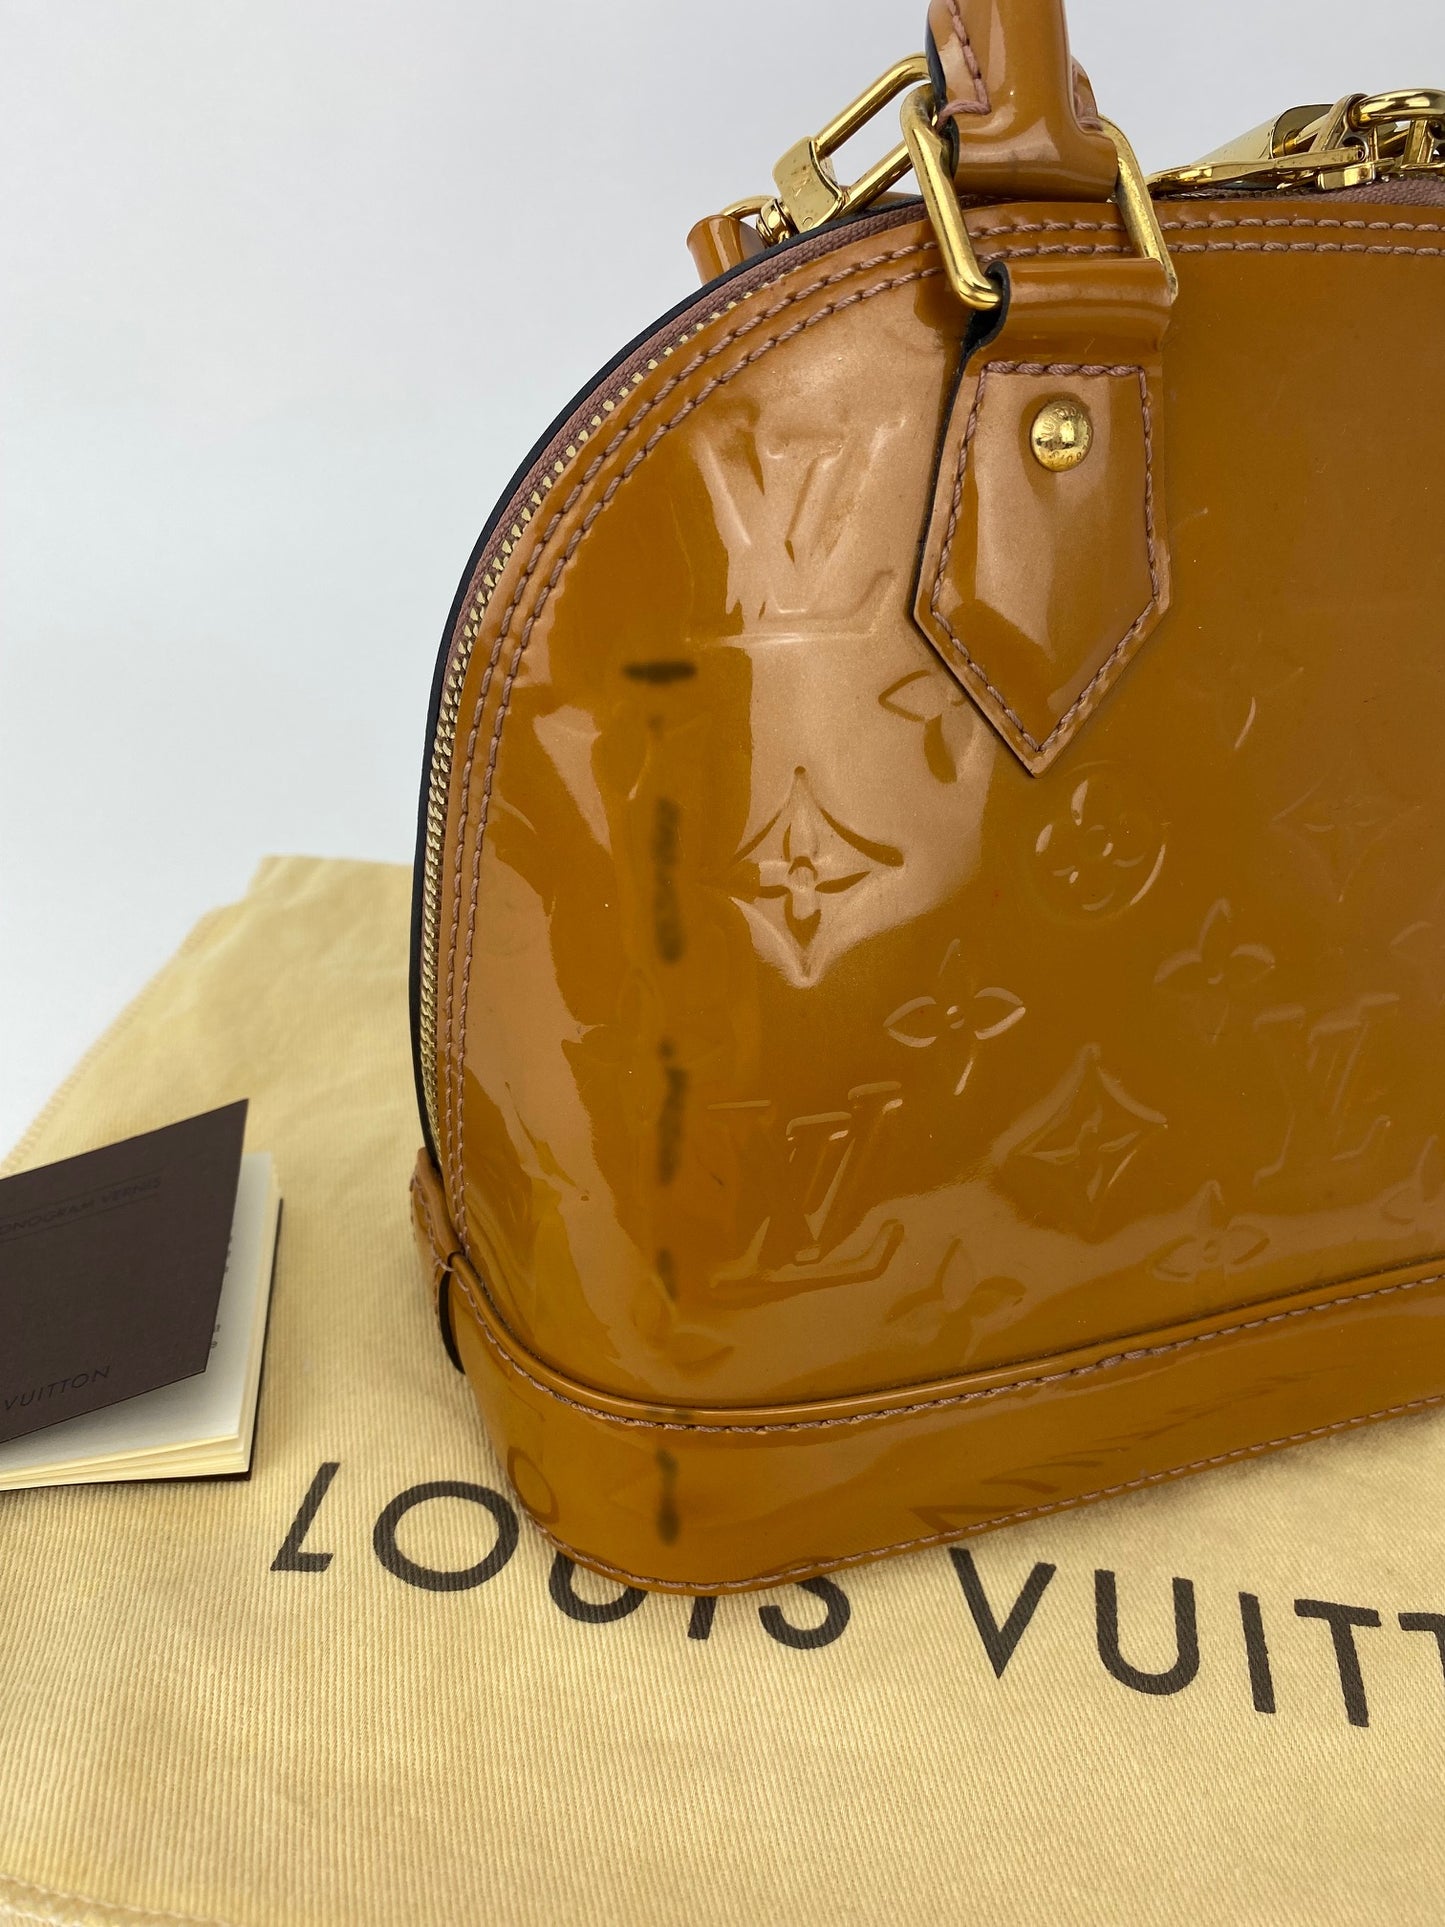 Louis Vuitton, Bags, Limited Louis Vuitton Alma Gm Monogram Vernis